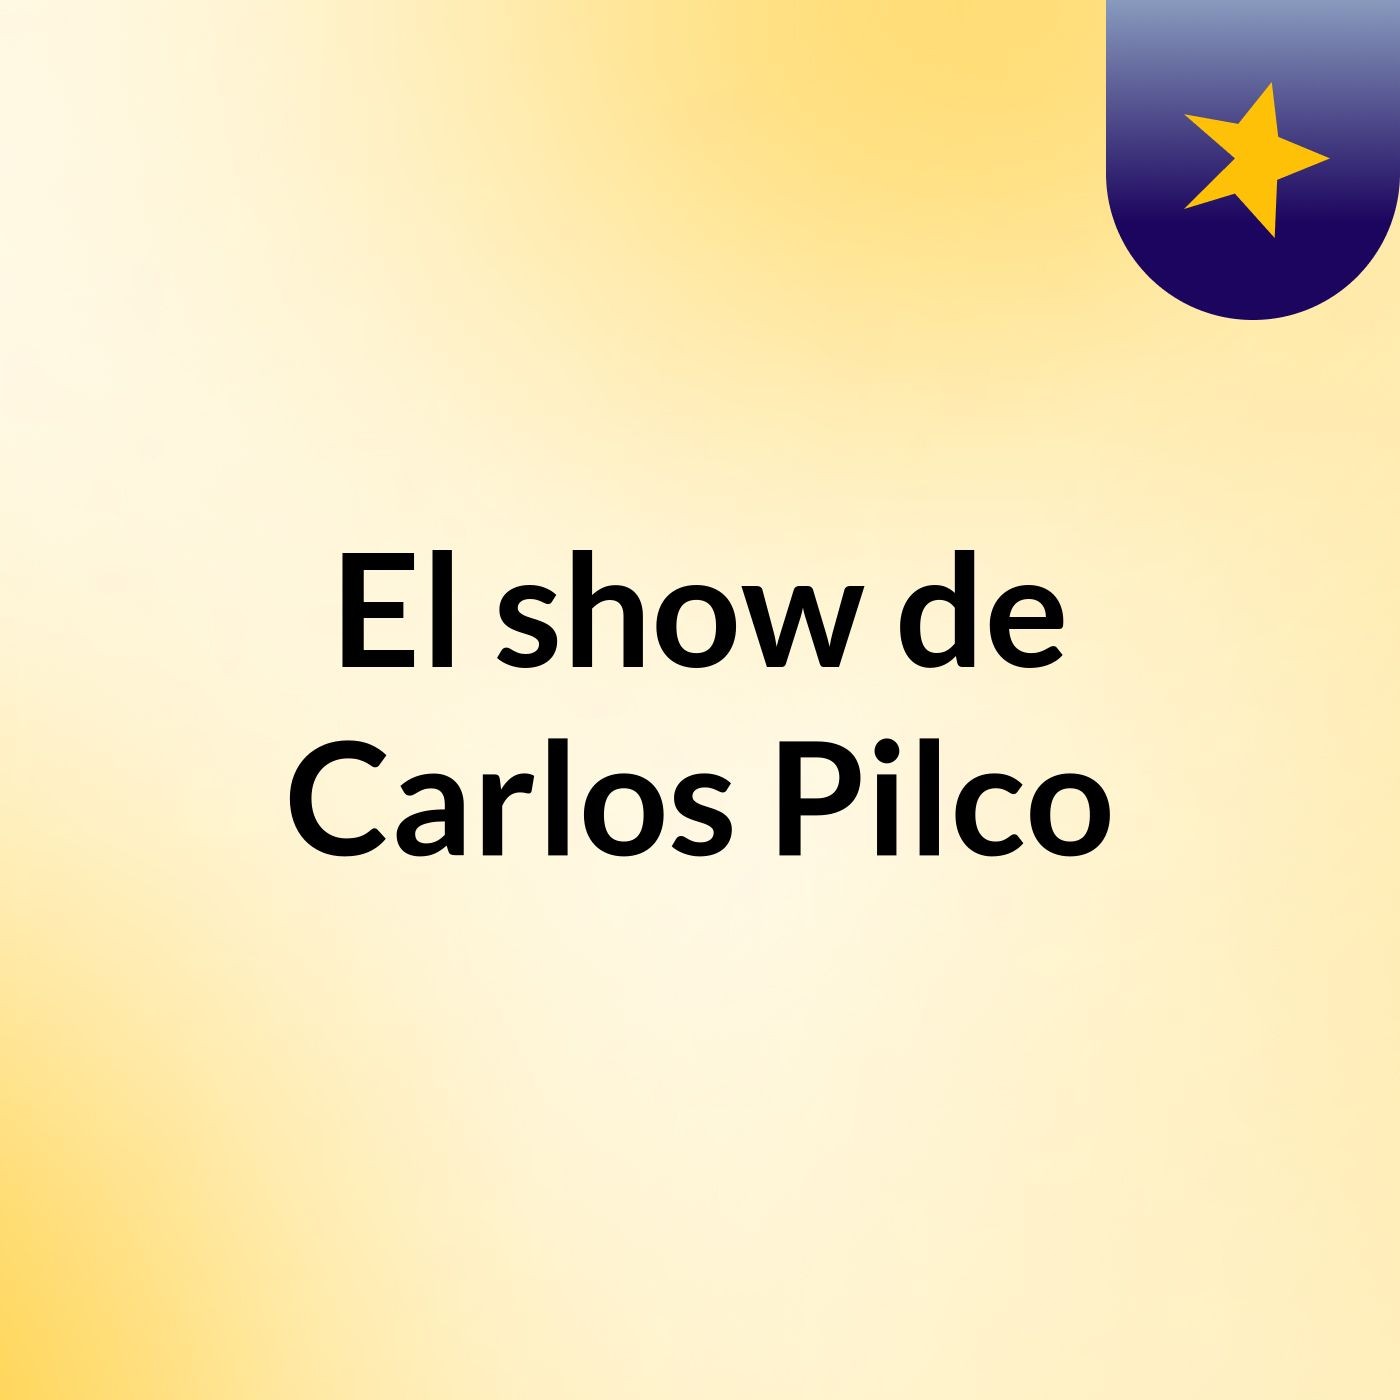 El show de Carlos Pilco